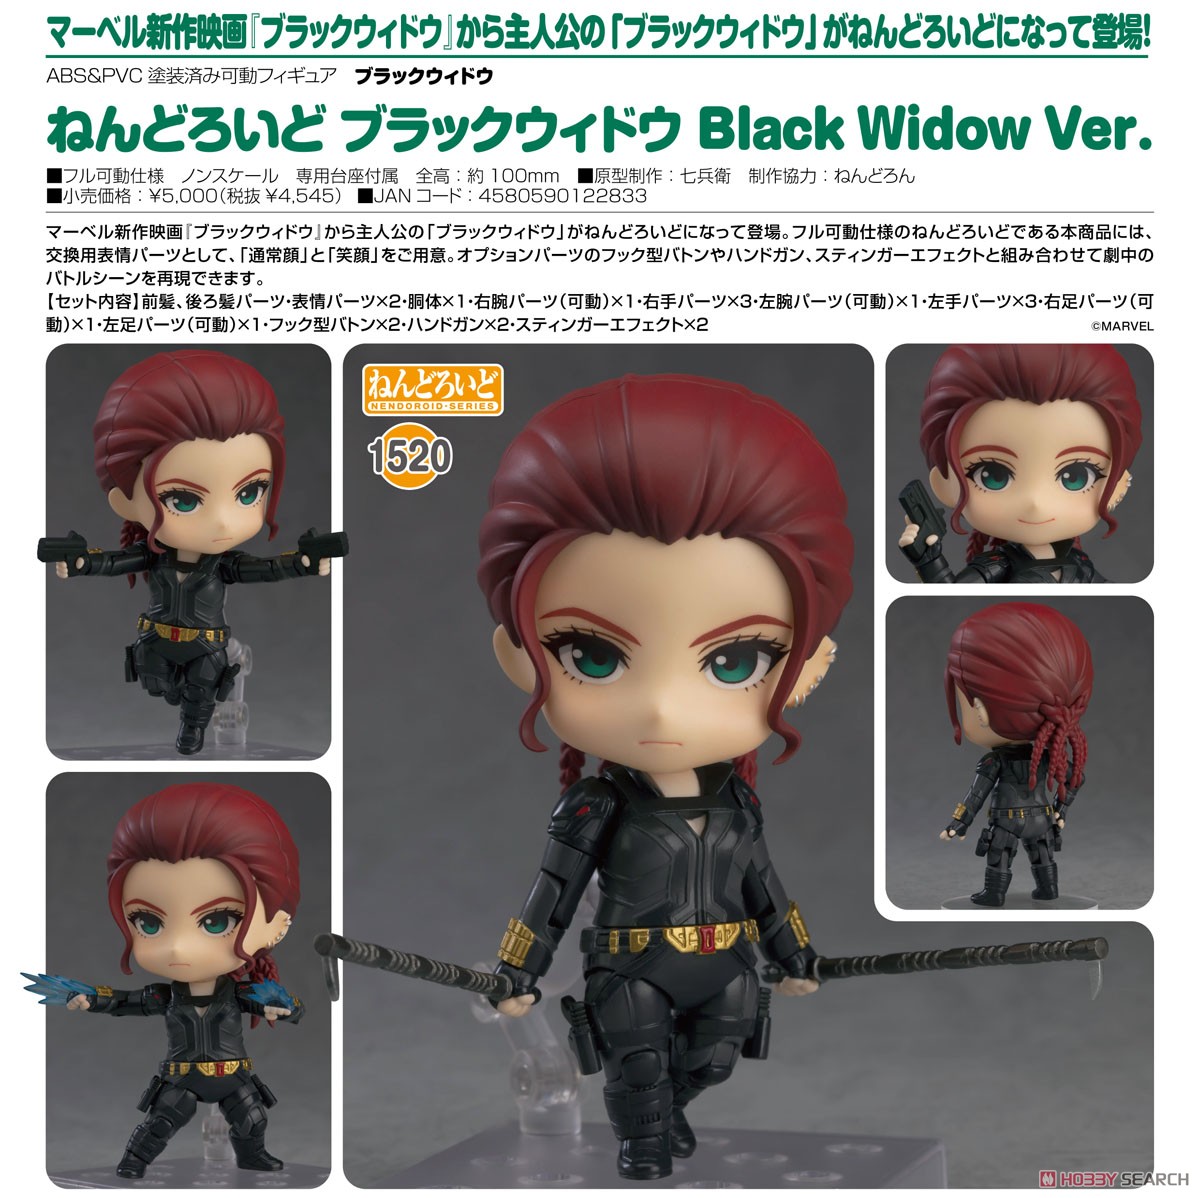 ねんどろいど『ブラックウィドウ Black Widow Ver. DX』デフォルメ可動フィギュア-010